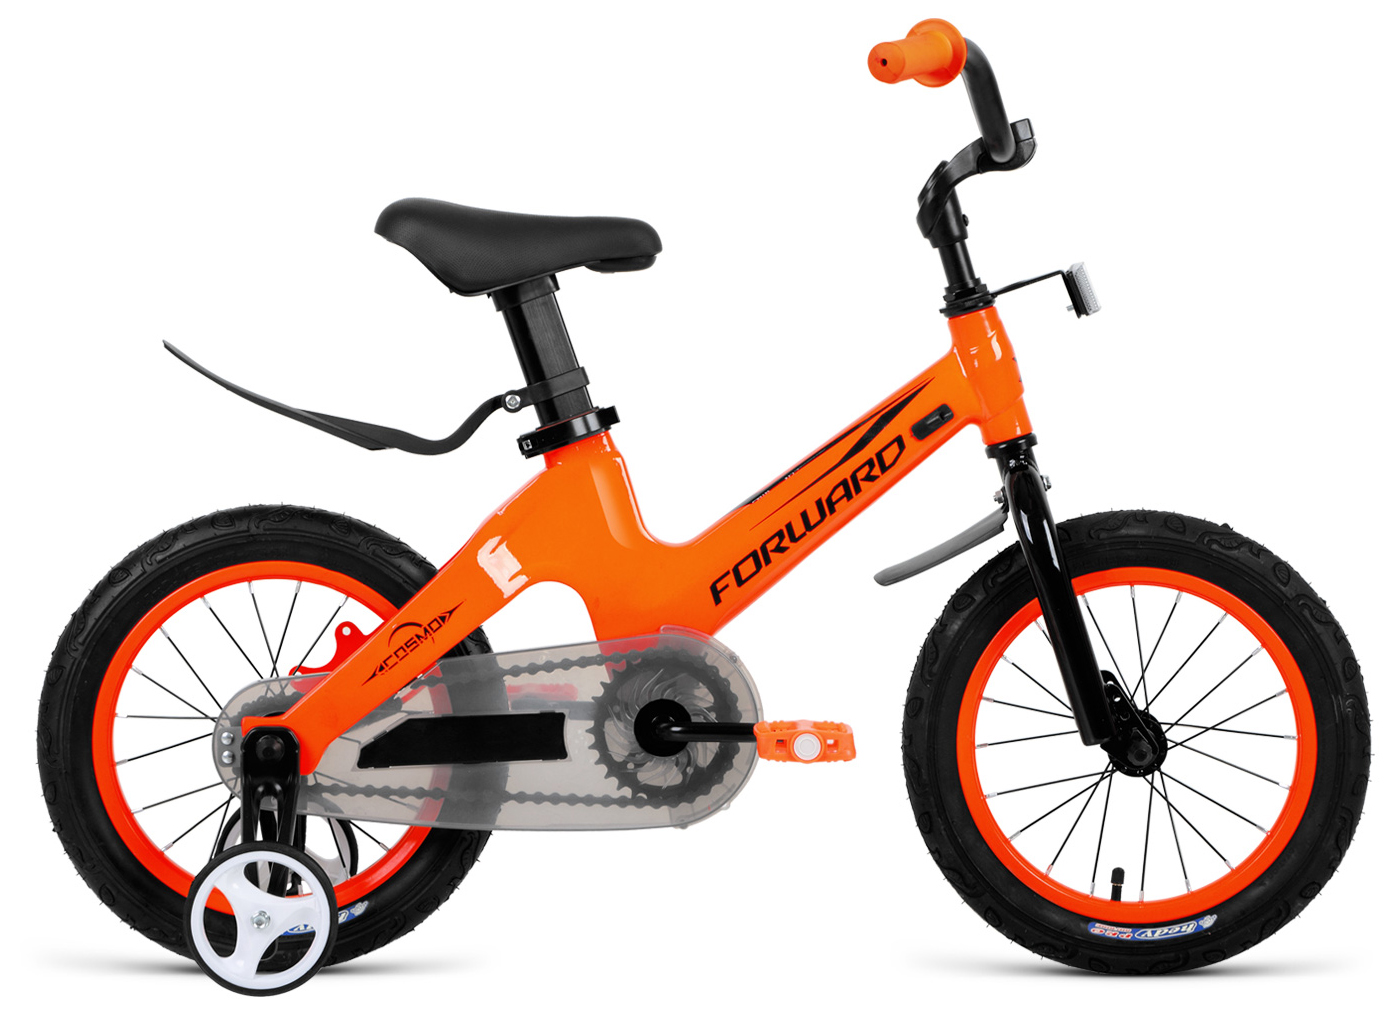  Отзывы о Детском велосипеде Forward Cosmo 12 2020